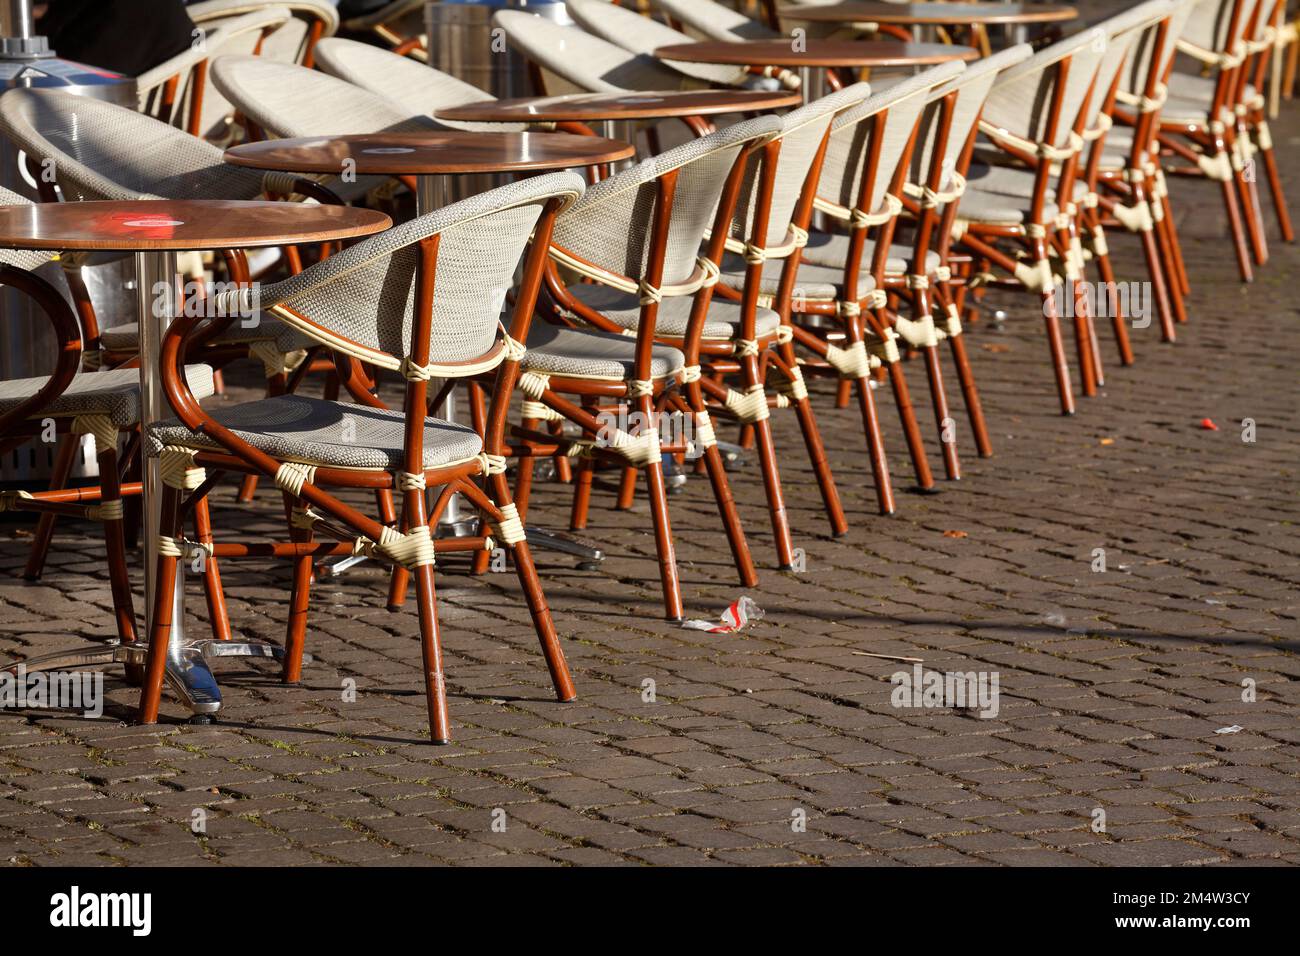 Stühle und Tische eines caffè, Stuhlreihe, Gastronomie, Deutschland Foto Stock